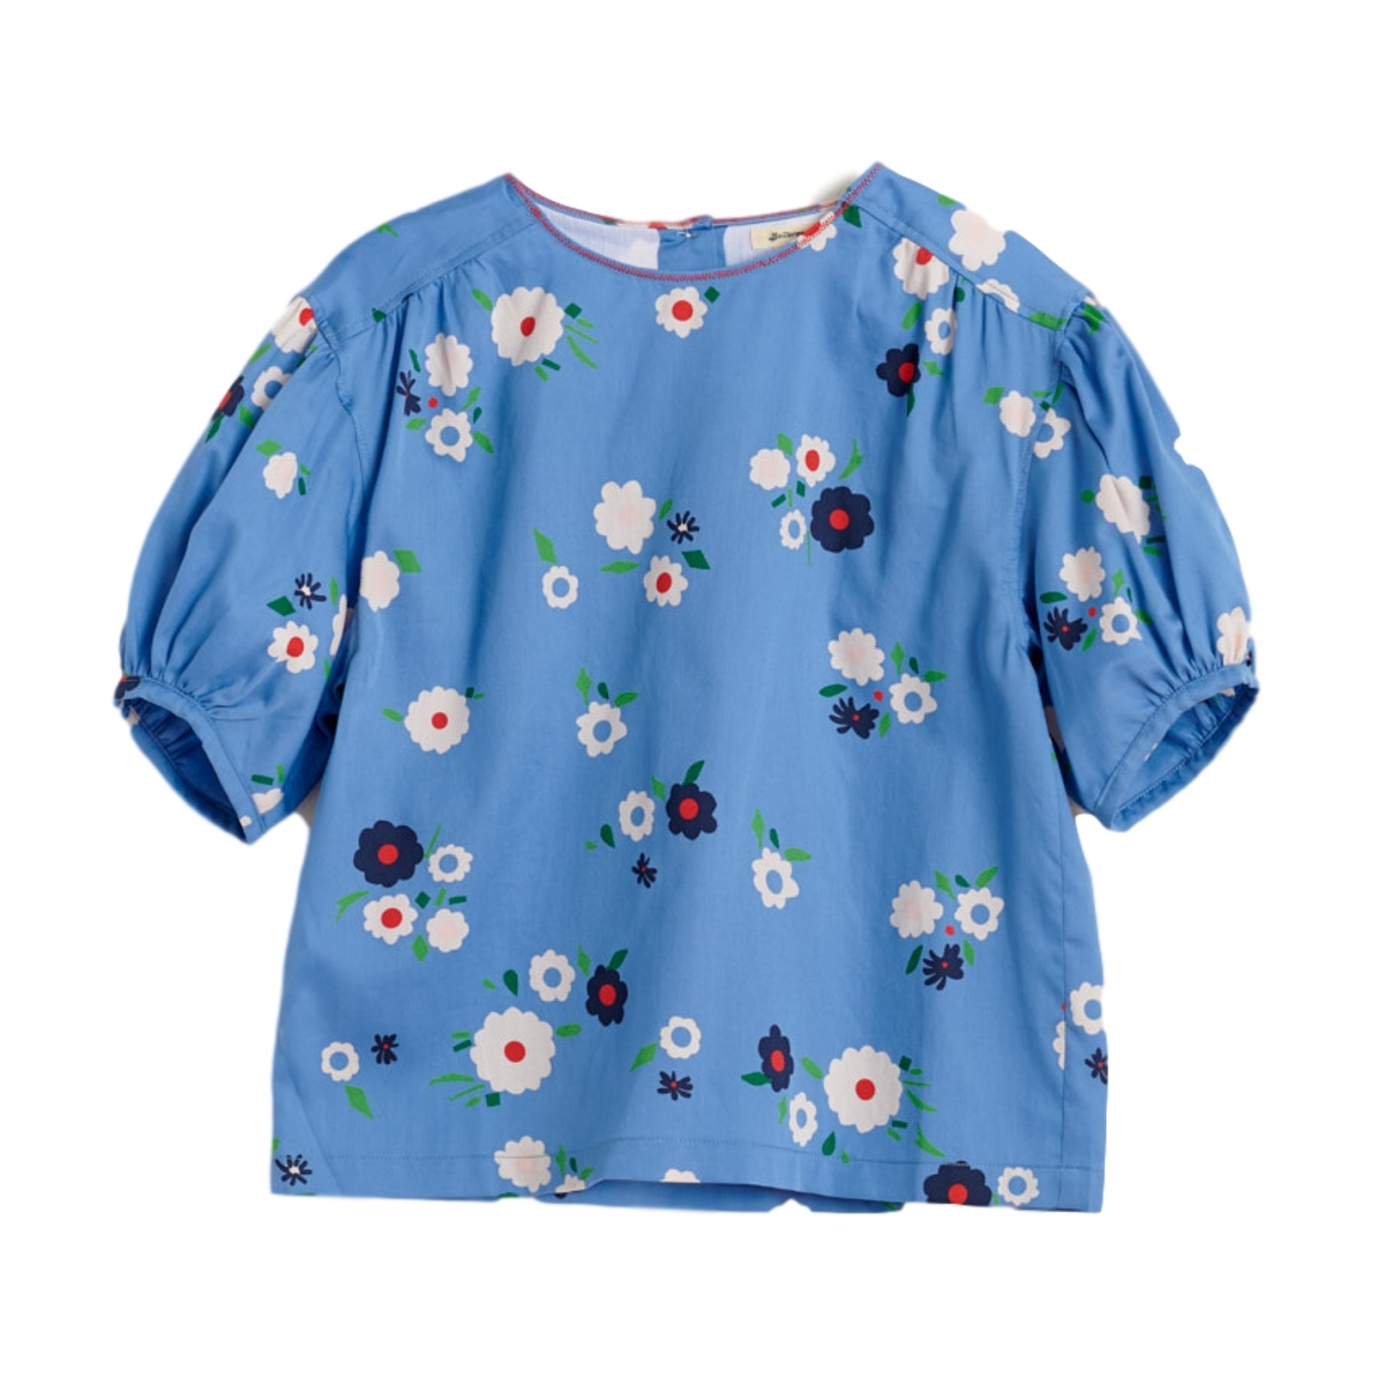 Bellerose - Абстрактная блузка синяя - Блузки и футболки - BK201408 F1827